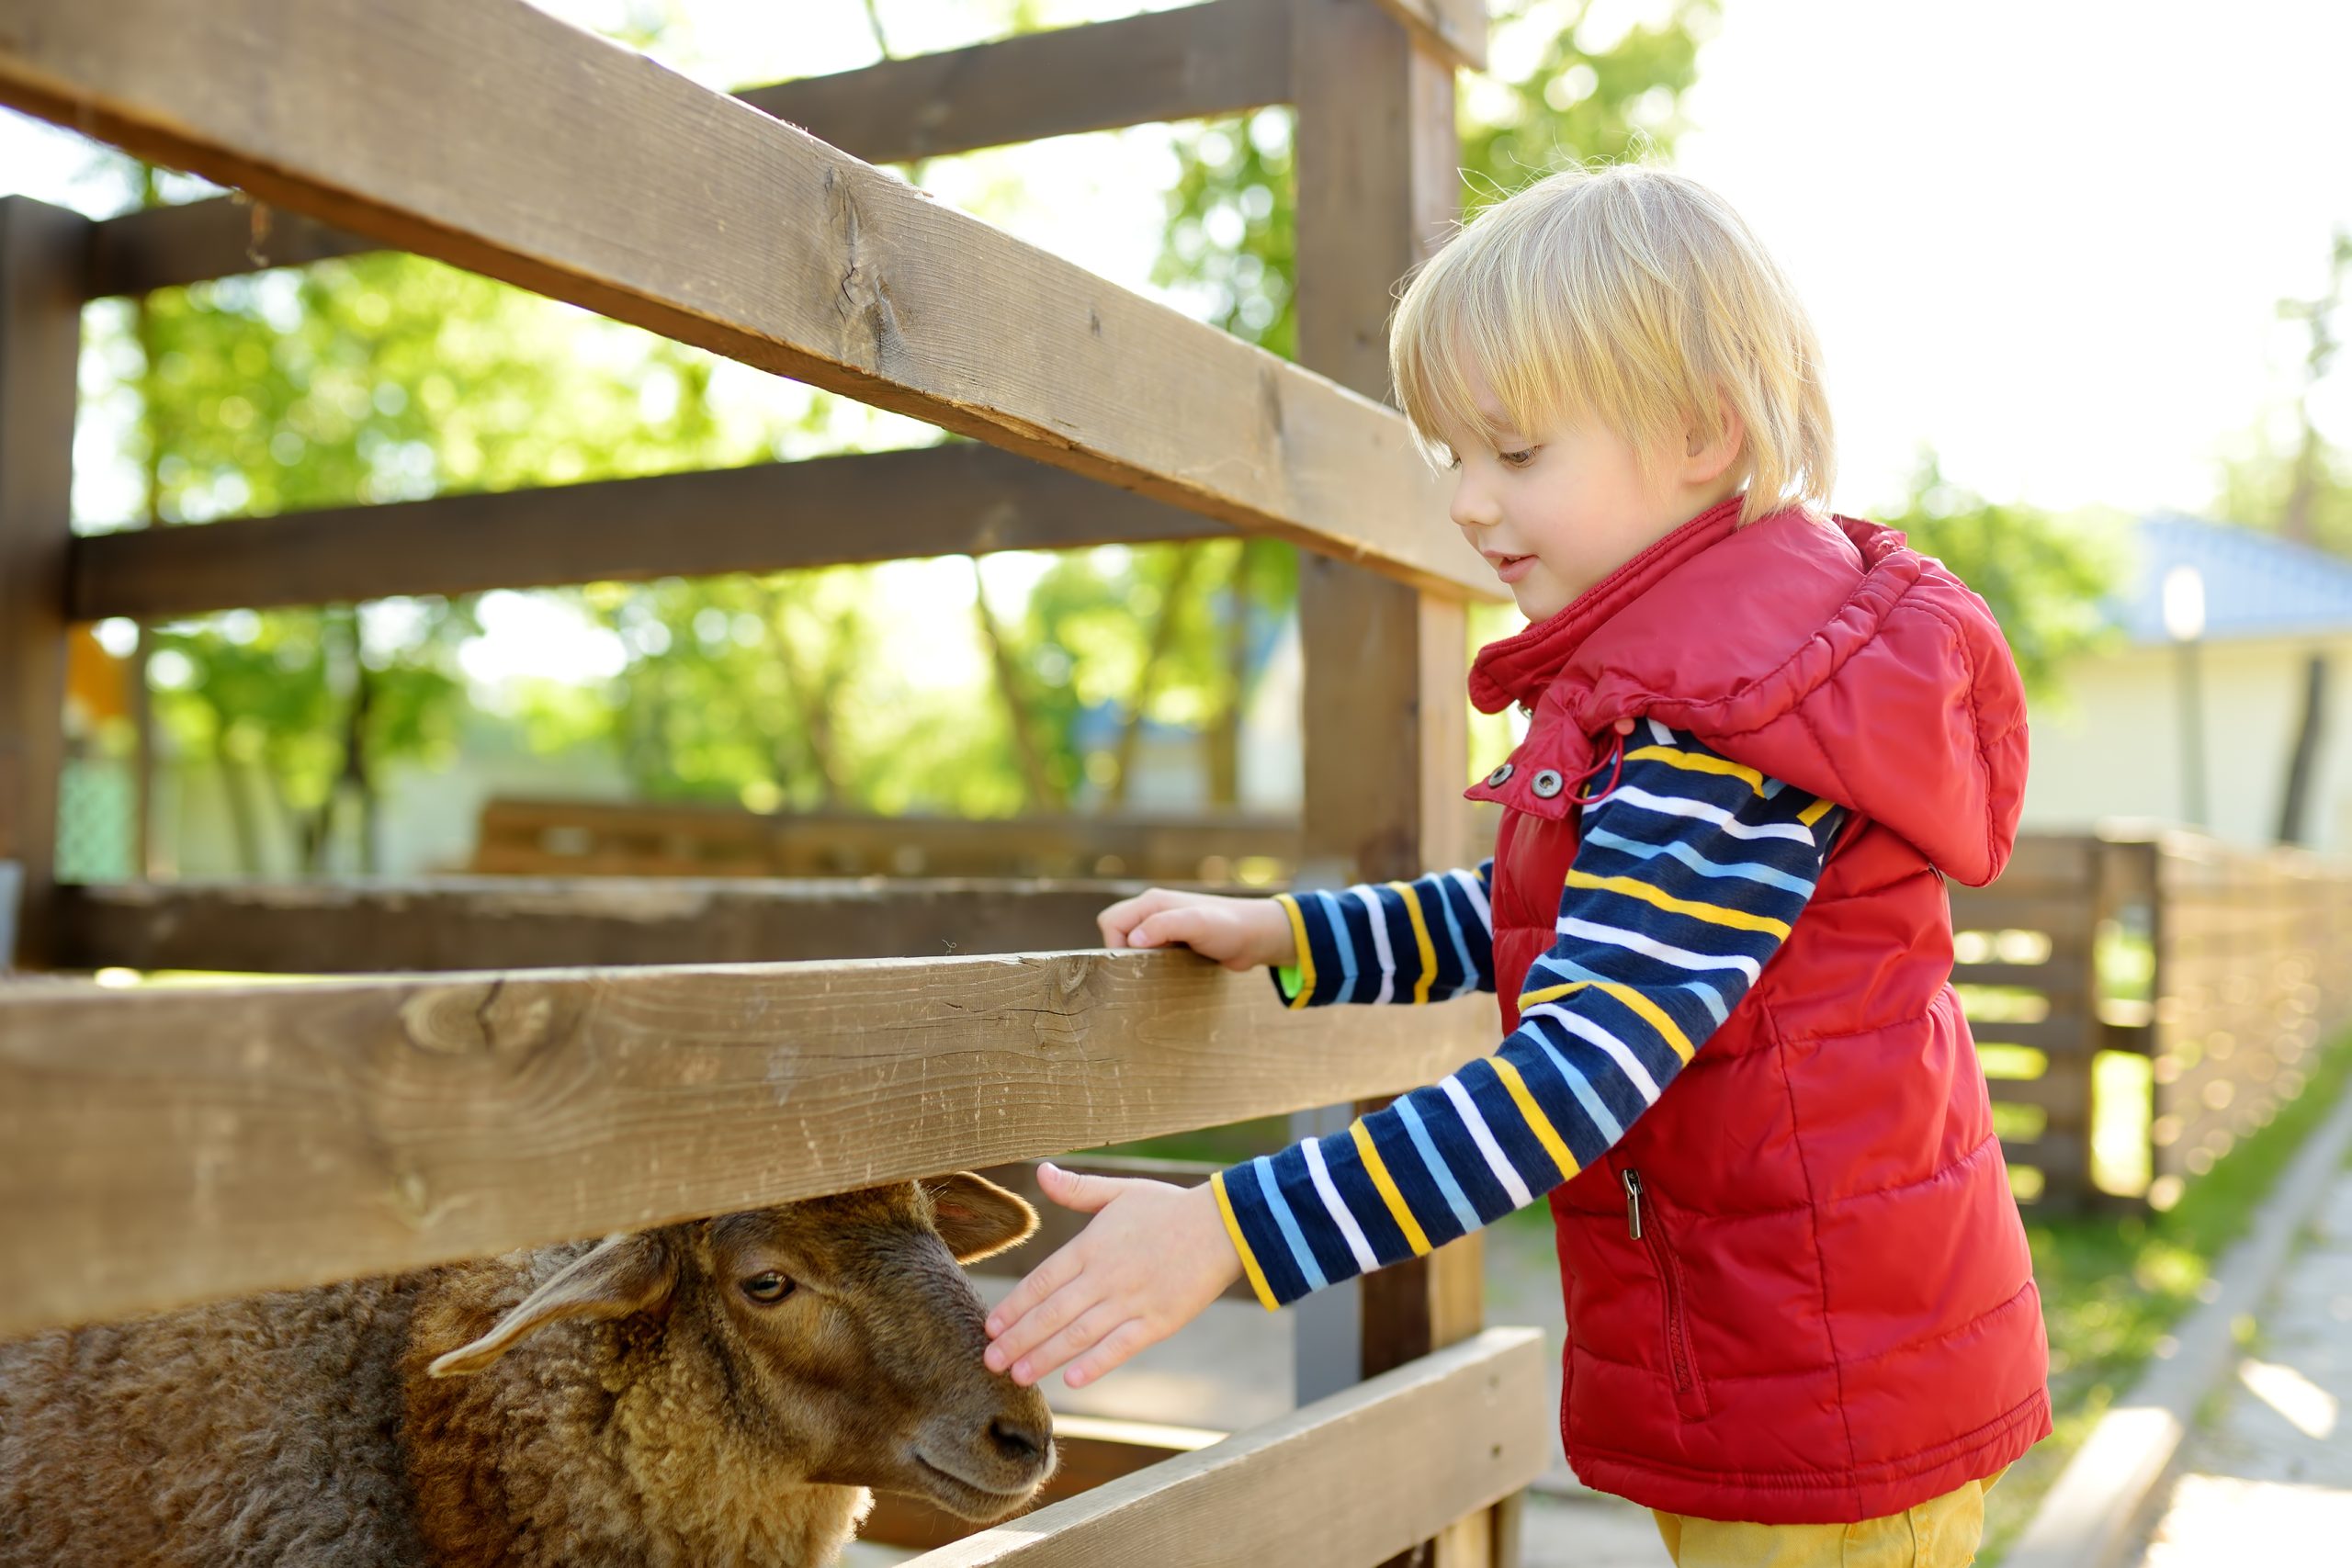 Vorwind Verein | Kleiner Junge streichelt Schafe. Kind im Streichelzoo im Freien